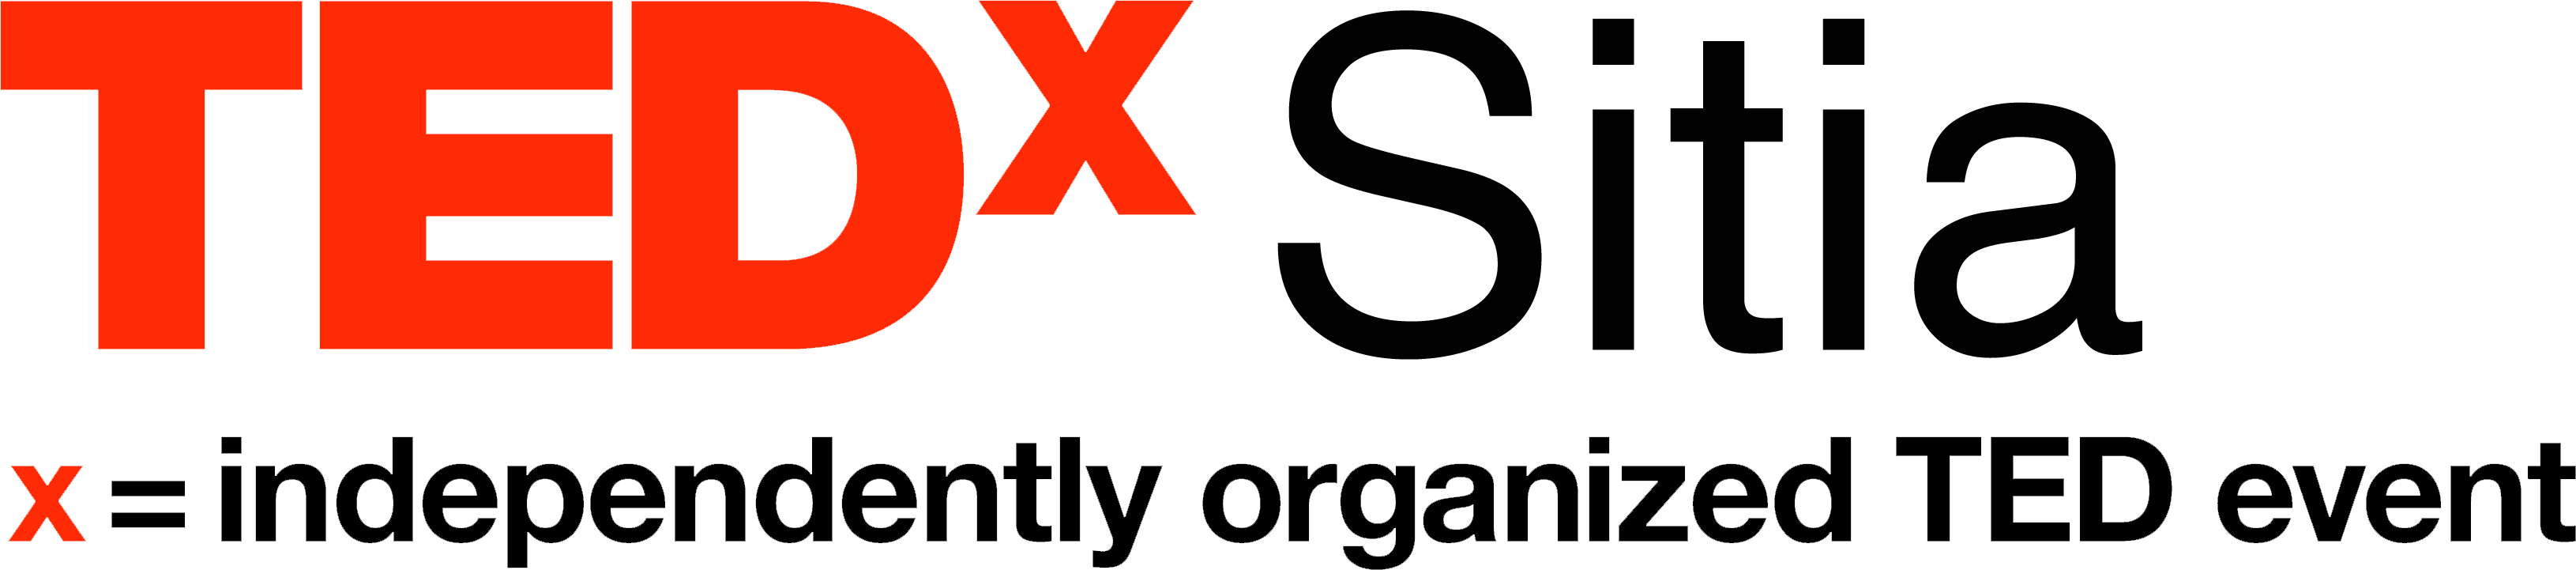 The official TEDxSitia logo.